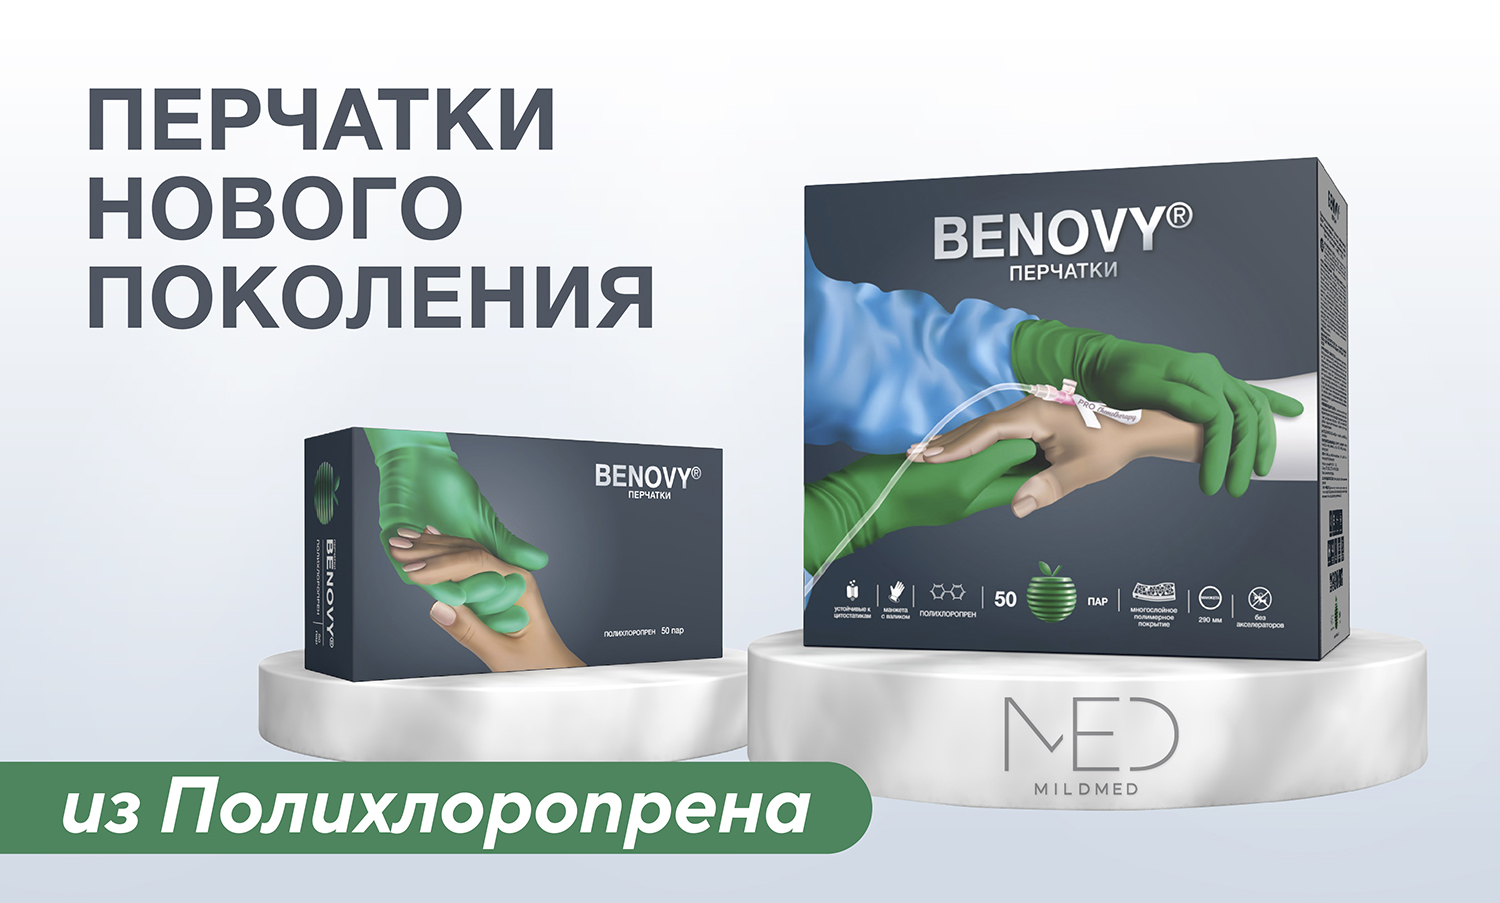 Перчатки нового поколения BENOVY Polychloroprene